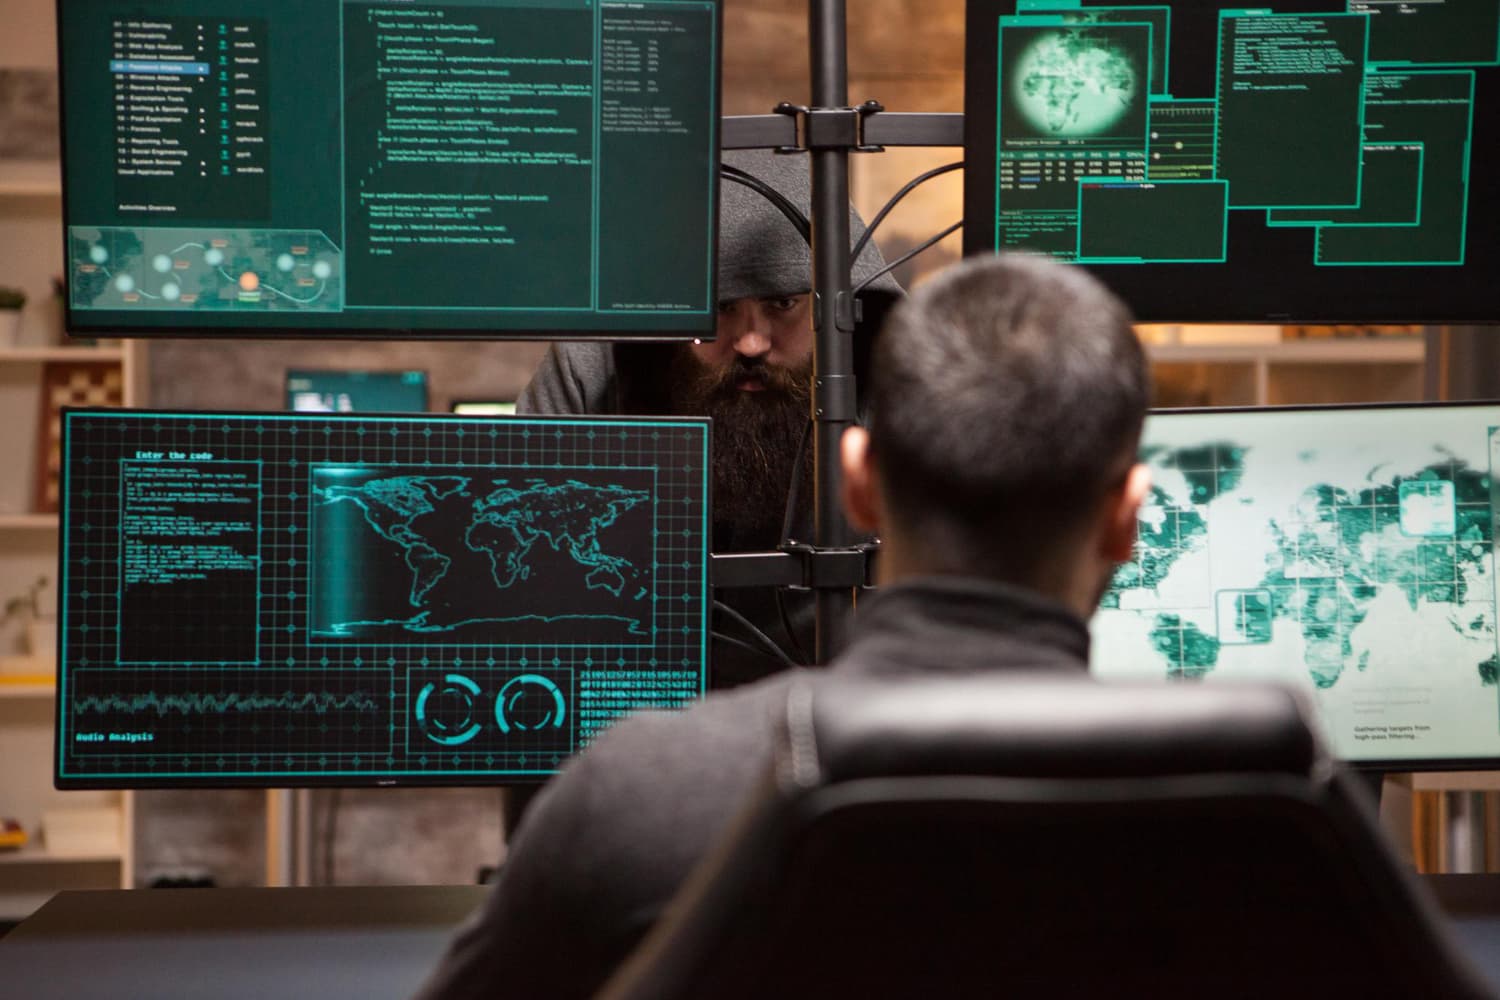 DDOS angrep illustrasjonsbilde - to skumle menn i svarte hettegensere som utfører et hackerangrep med tre skjermer med grønn kode.